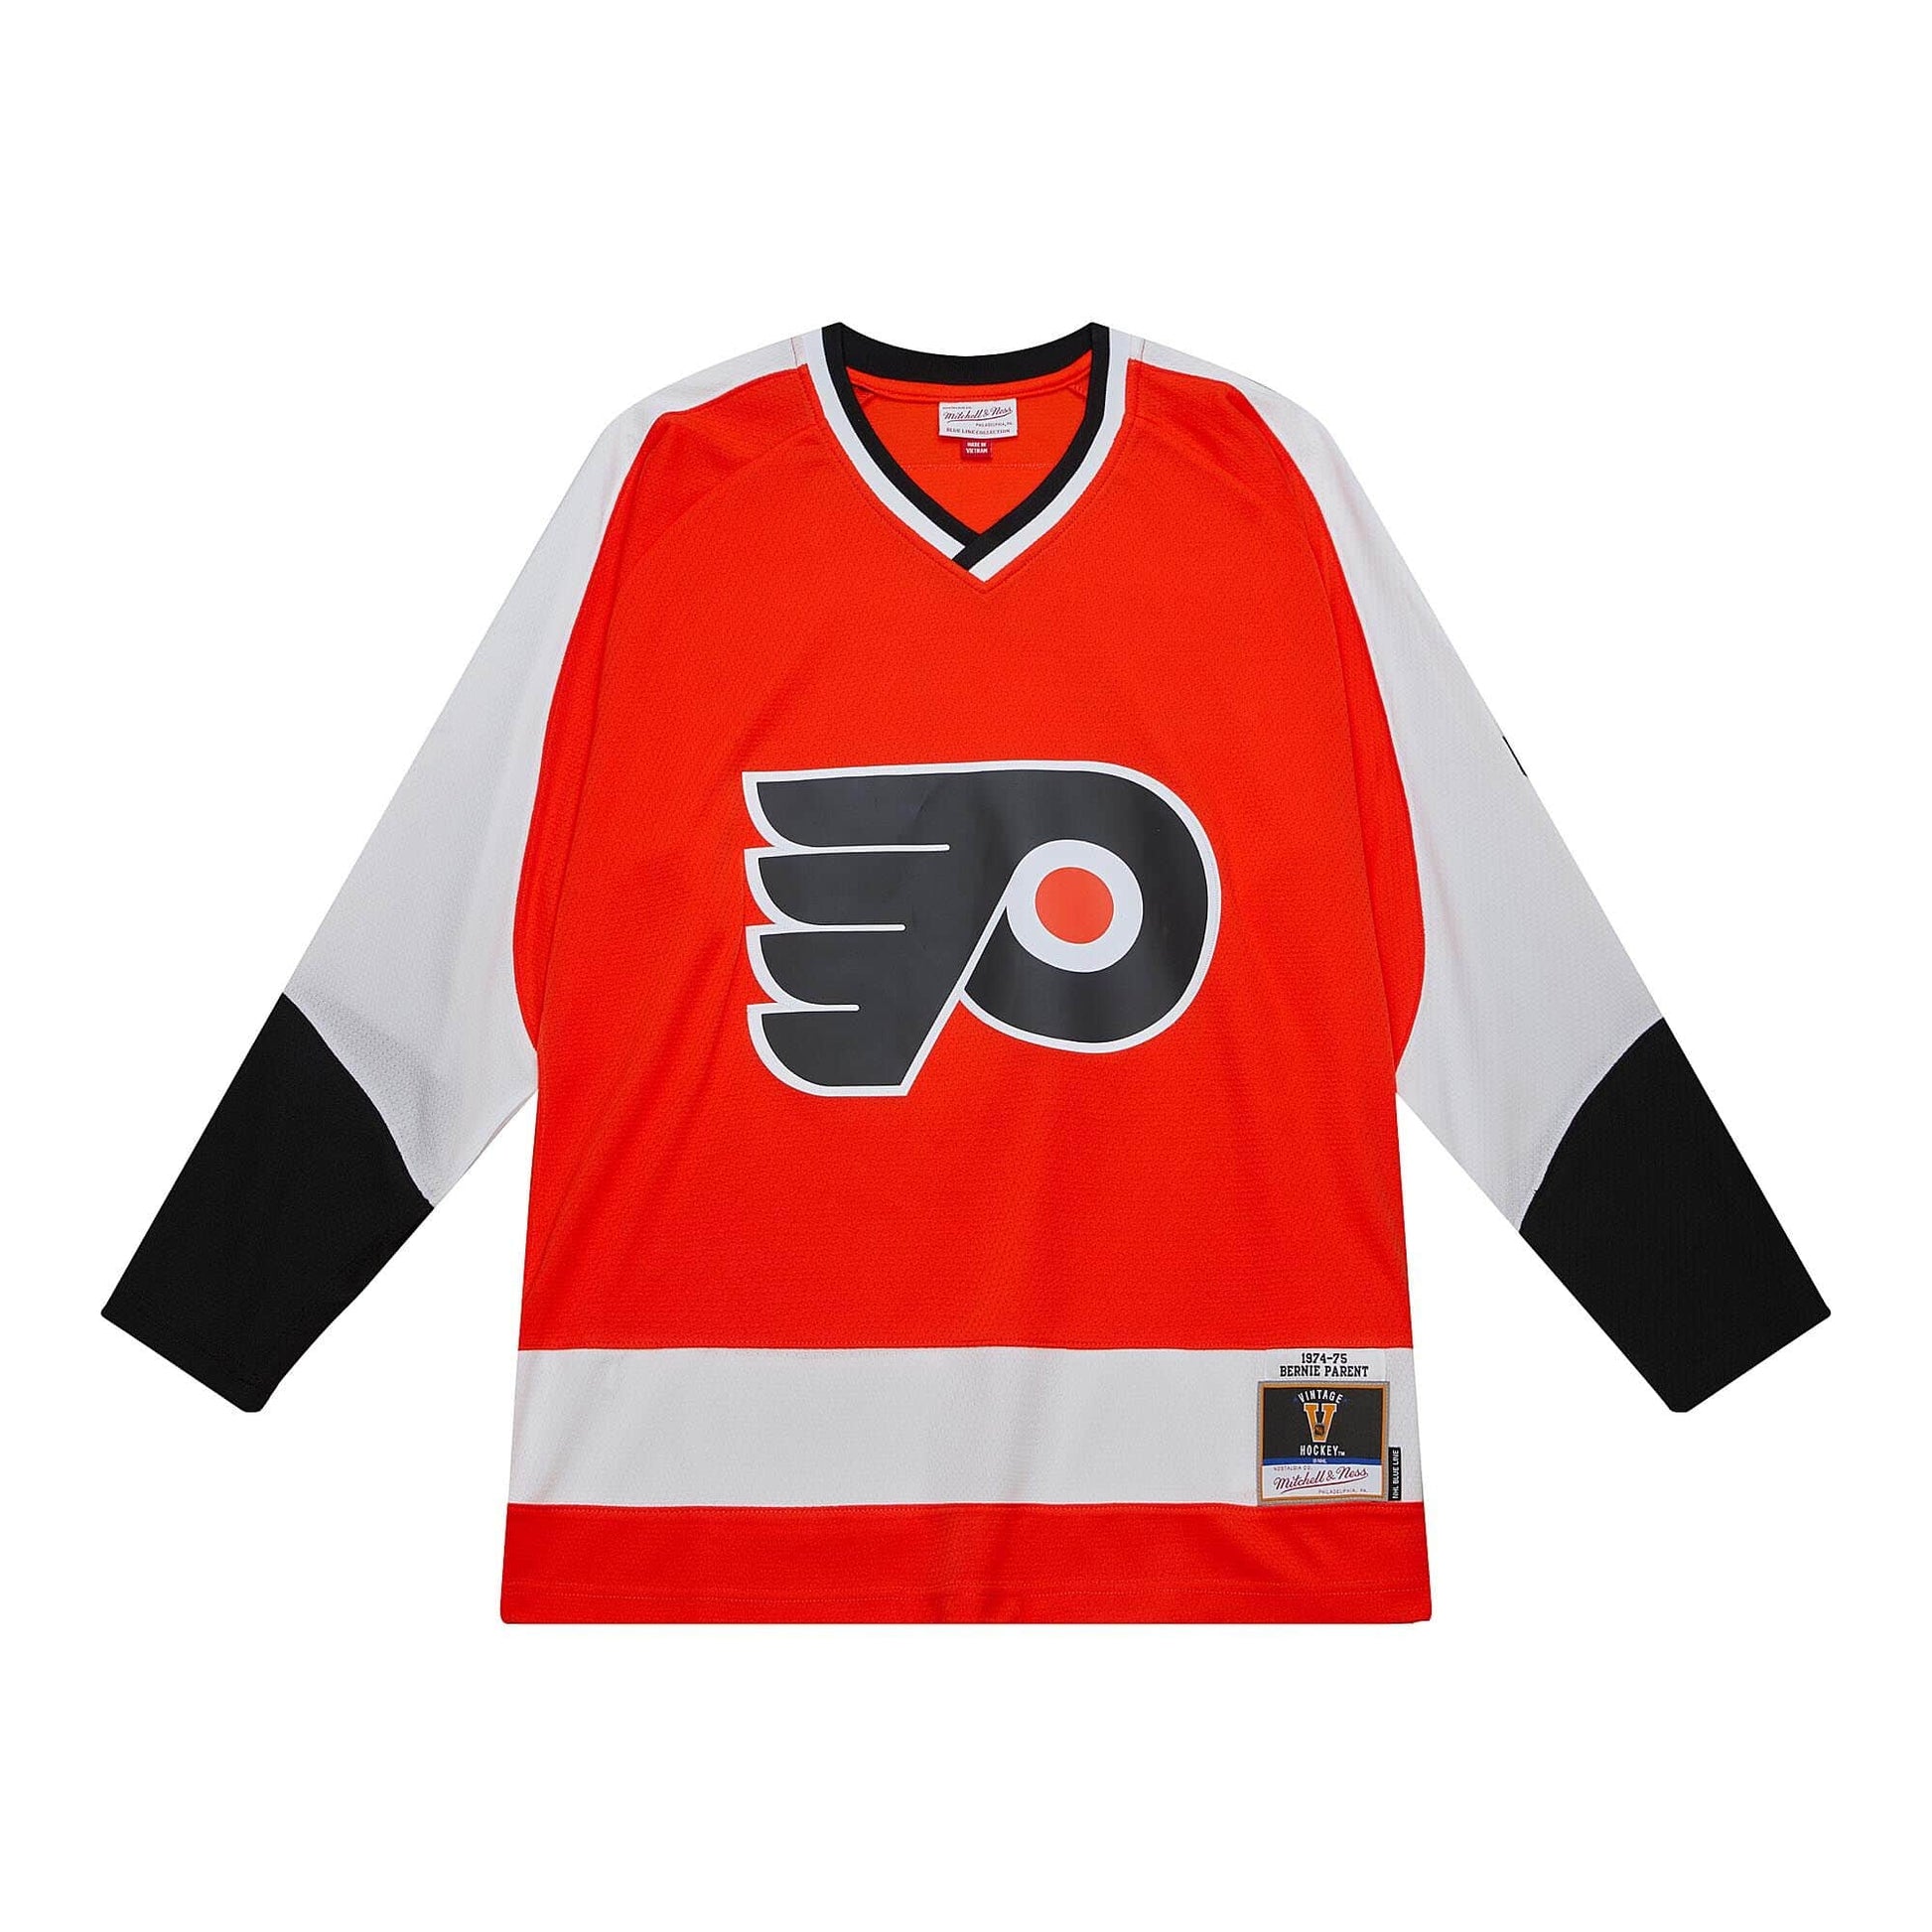 Philadelphia Flyers Jerseys in Philadelphia Flyers Team Shop